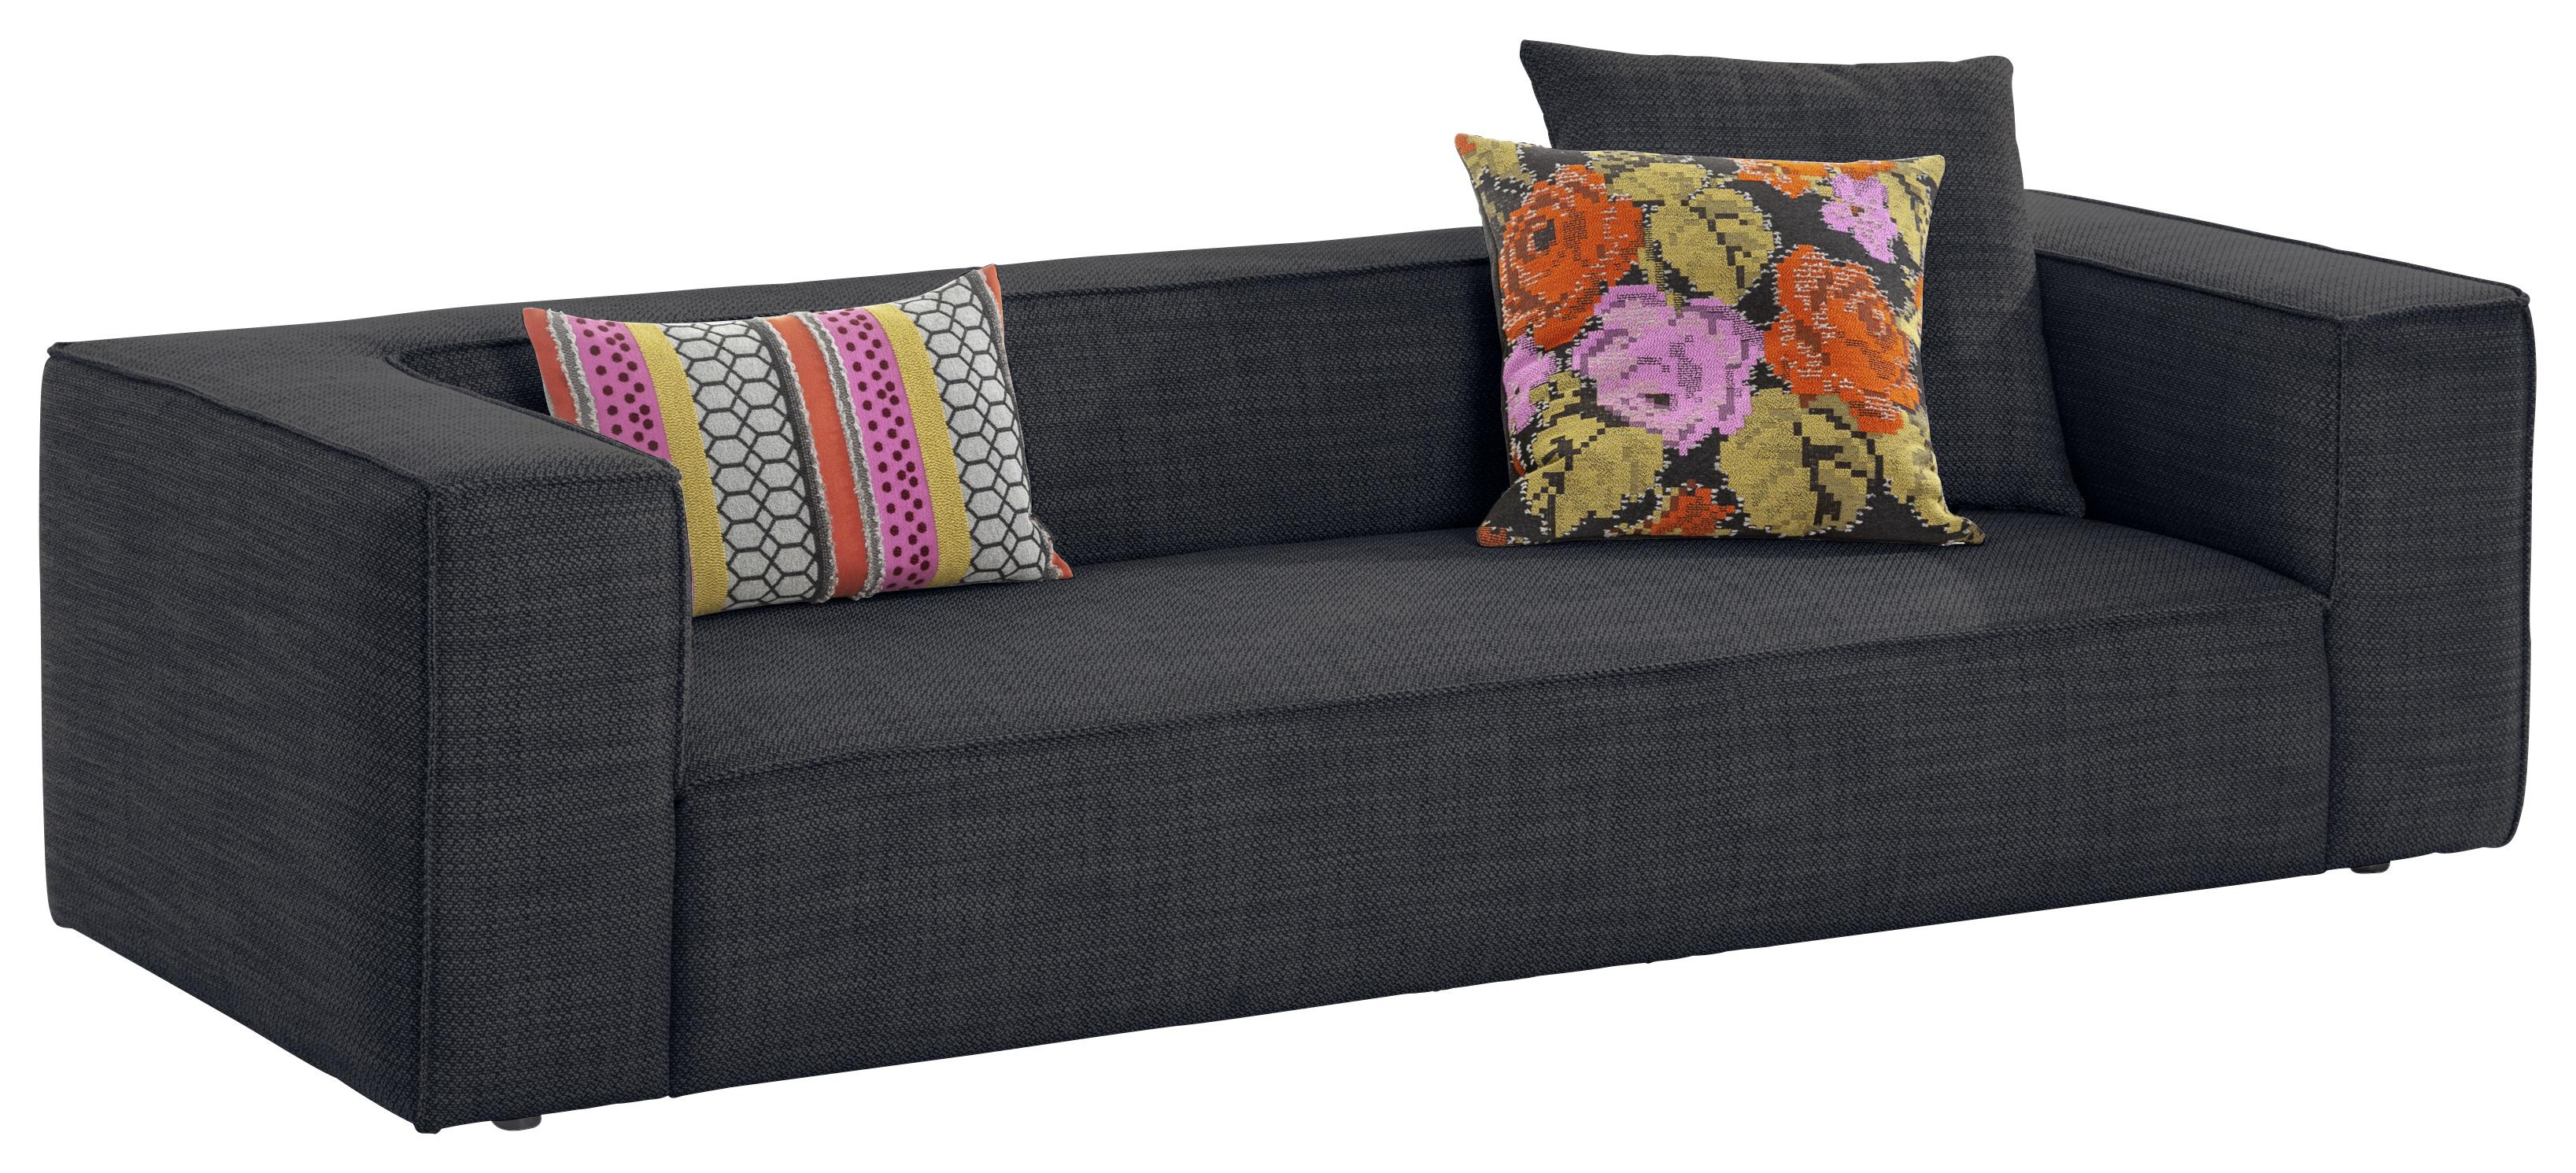 3-Sitzer-Sofa Around The Block Blau/Grau - Blau/Grau, MODERN, Textil (260/66/104cm) - W.Schillig